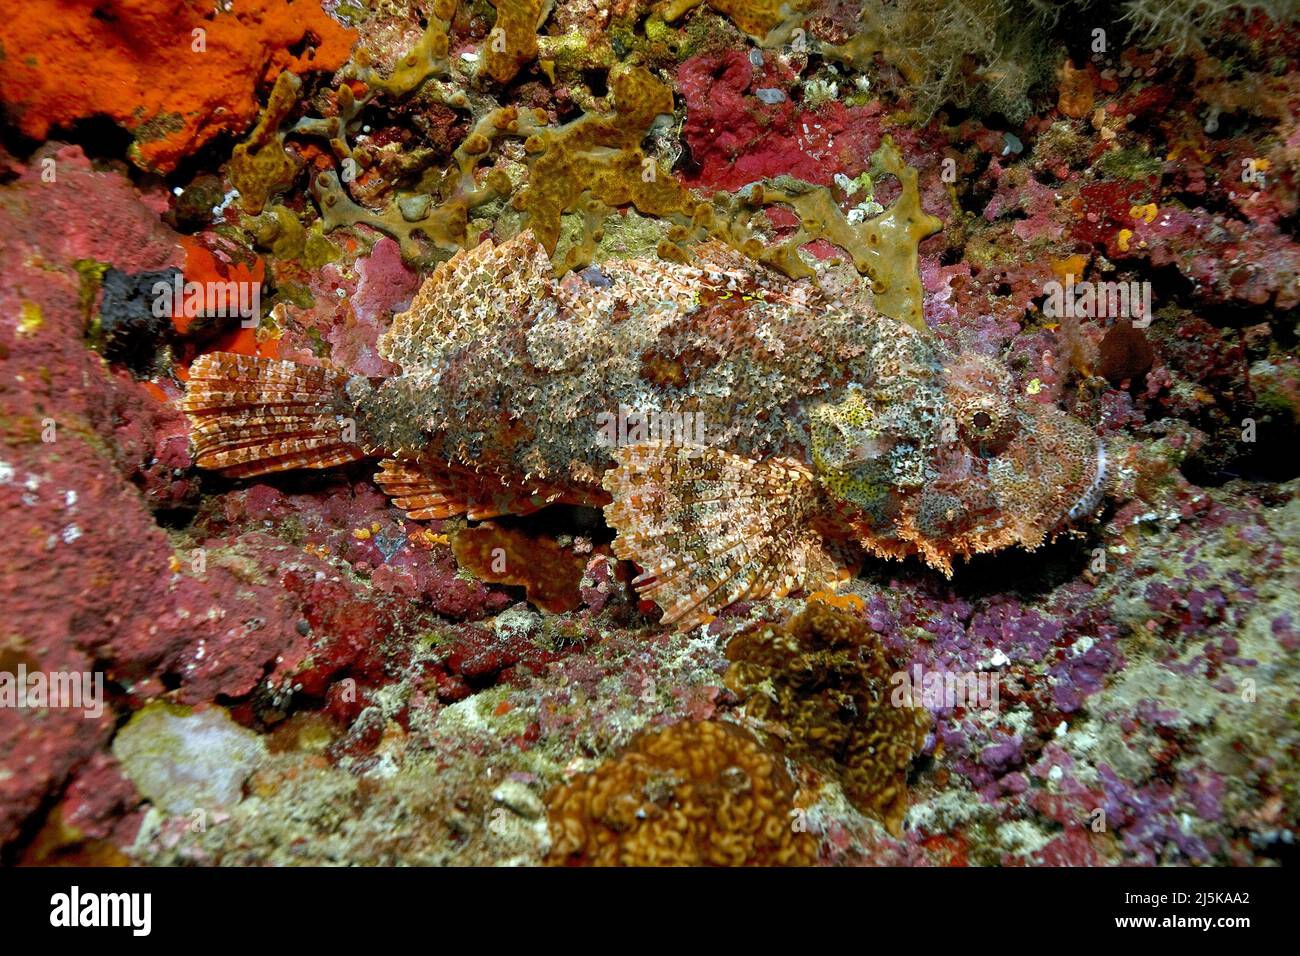 Scorpionfish tasselé ou Scorpionfish (Scorpaenopsis oxycephala), dans un récif de corail, Maldives, océan Indien, Asie Banque D'Images